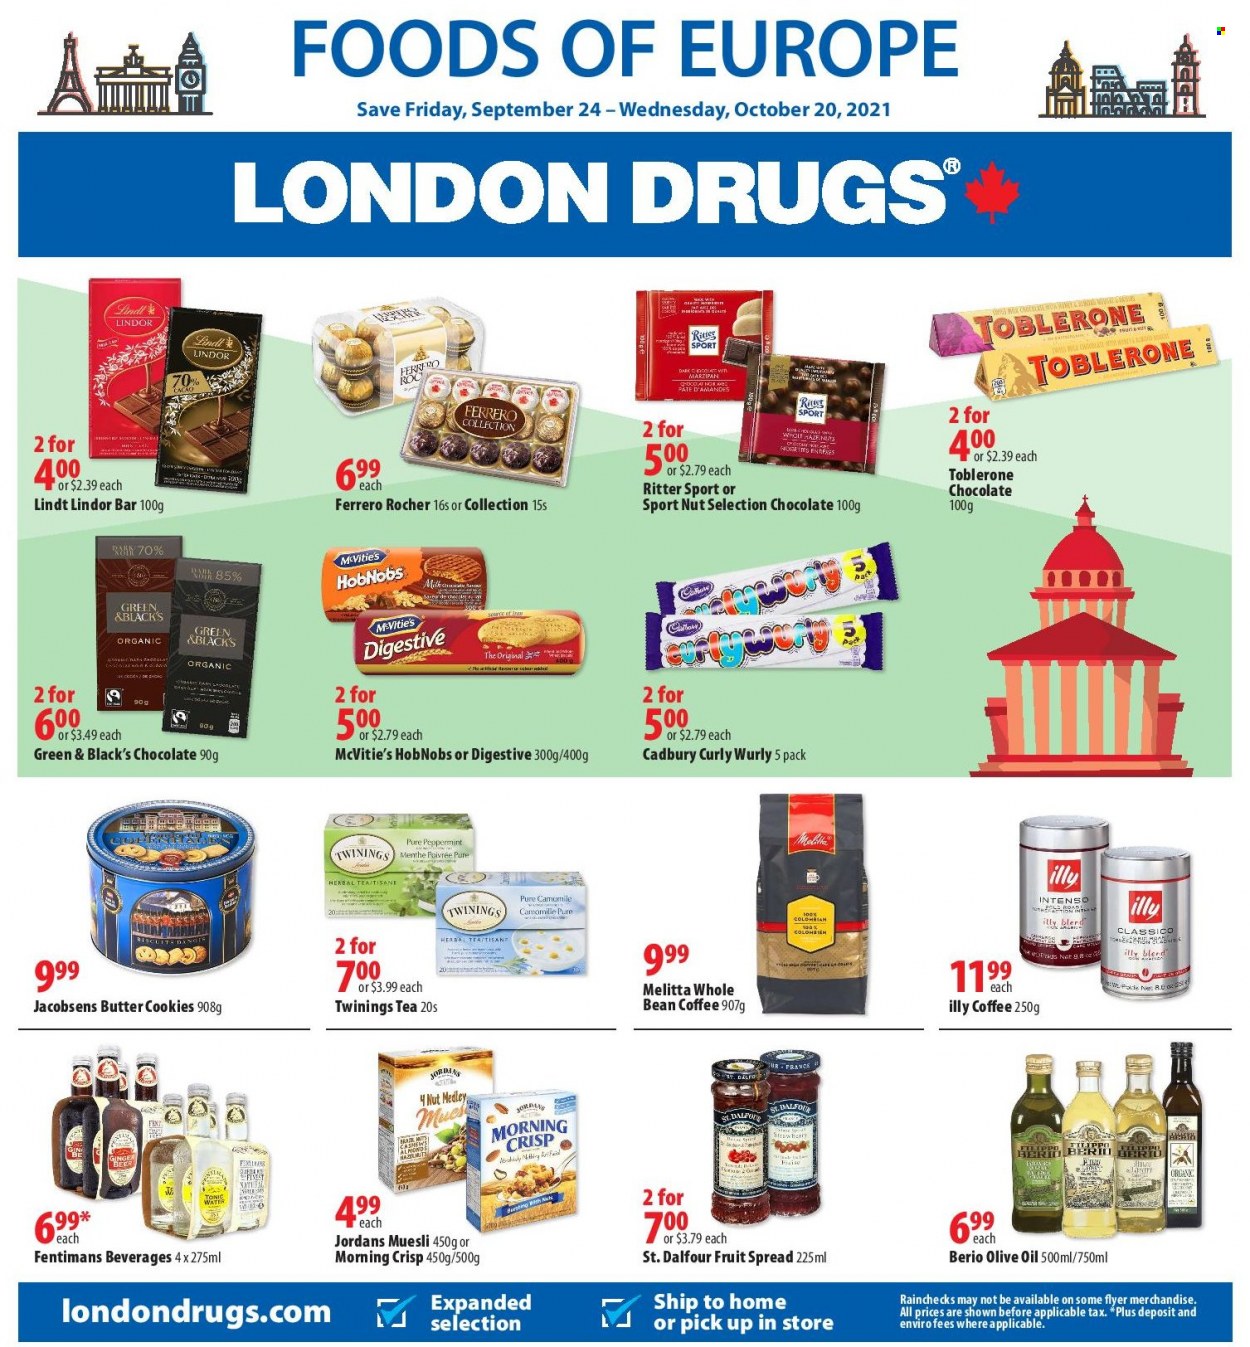 thumbnail - Circulaire London Drugs - 24 Septembre 2021 - 20 Octobre 2021 - Produits soldés - cookies, cacao, Jordans, menthe, Ritter Sport, Ferrero Rocher, Lindor, Lindt. Page 1.